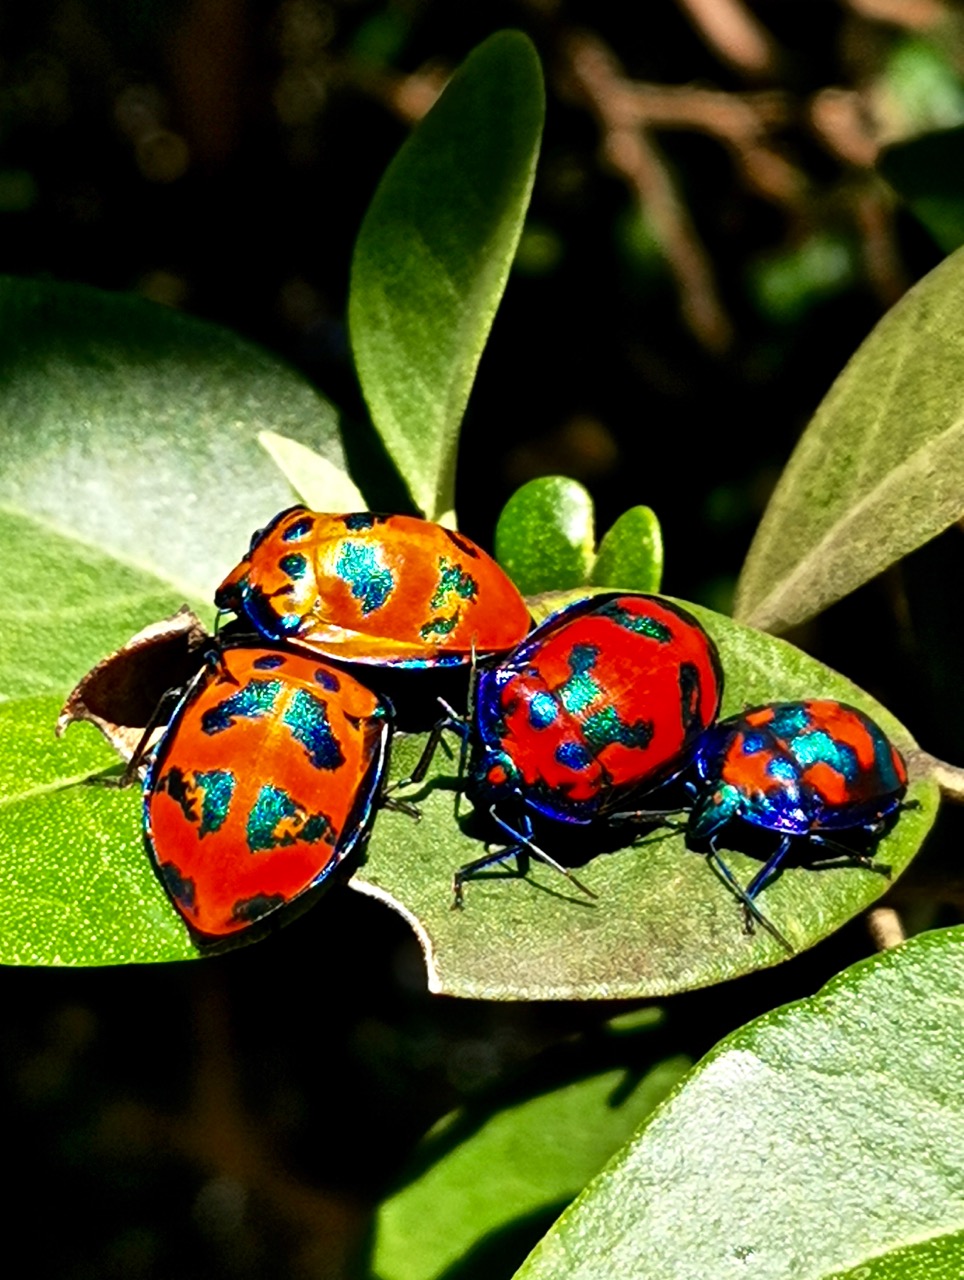 甲虫有指甲盖大小,斑纹图案都不一样,颜色由橙